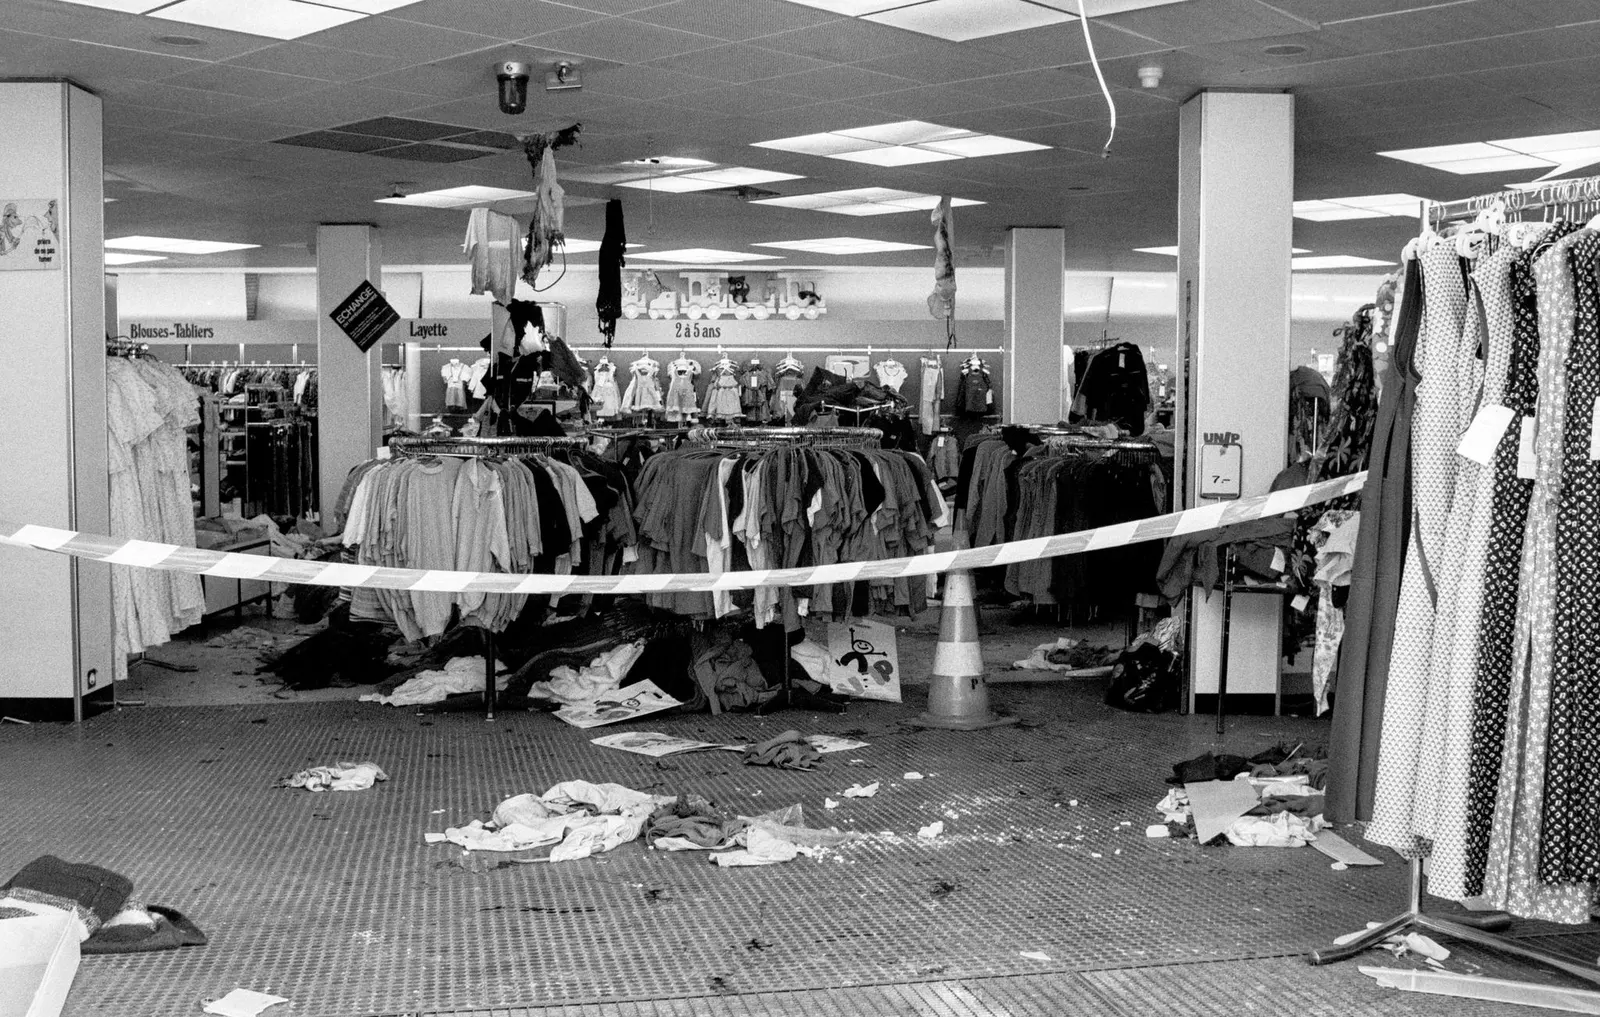 Le 21 juillet 1981, une attaque visait le magasin Uniprix à Lausanne, faisant 26 blessés